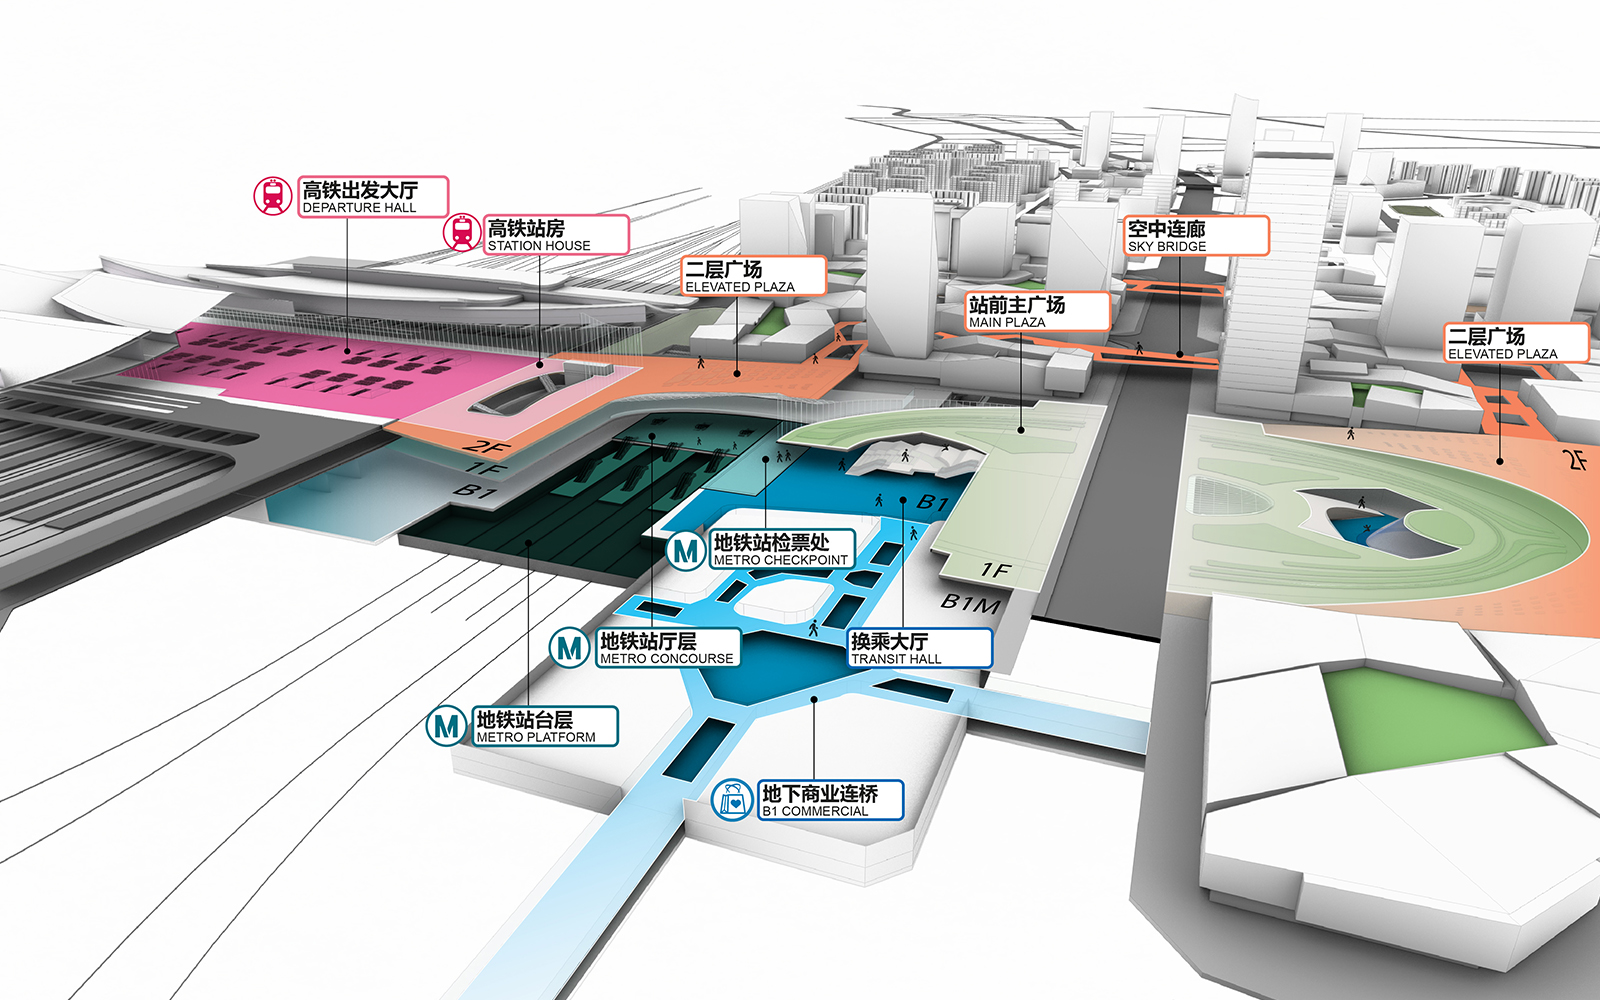 西安东站及相关工程初步设计获批 西安将再添大型综合交通枢纽 -- 陕西头条客户端